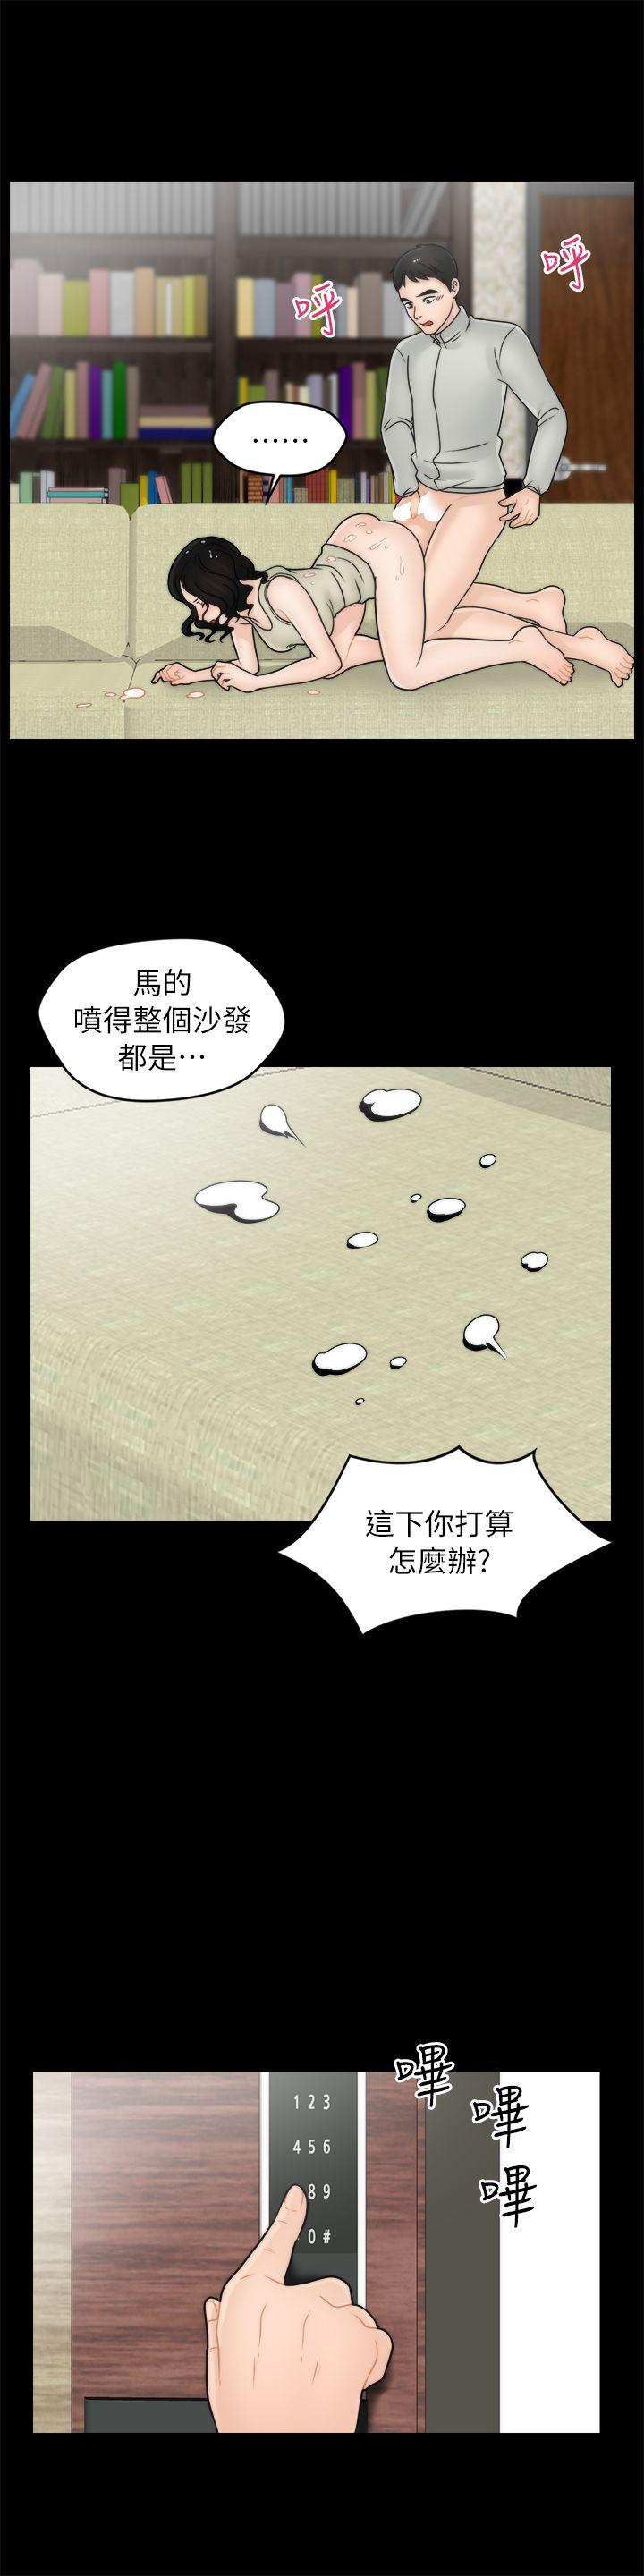 韩国污漫画 偷偷愛 第13话 19